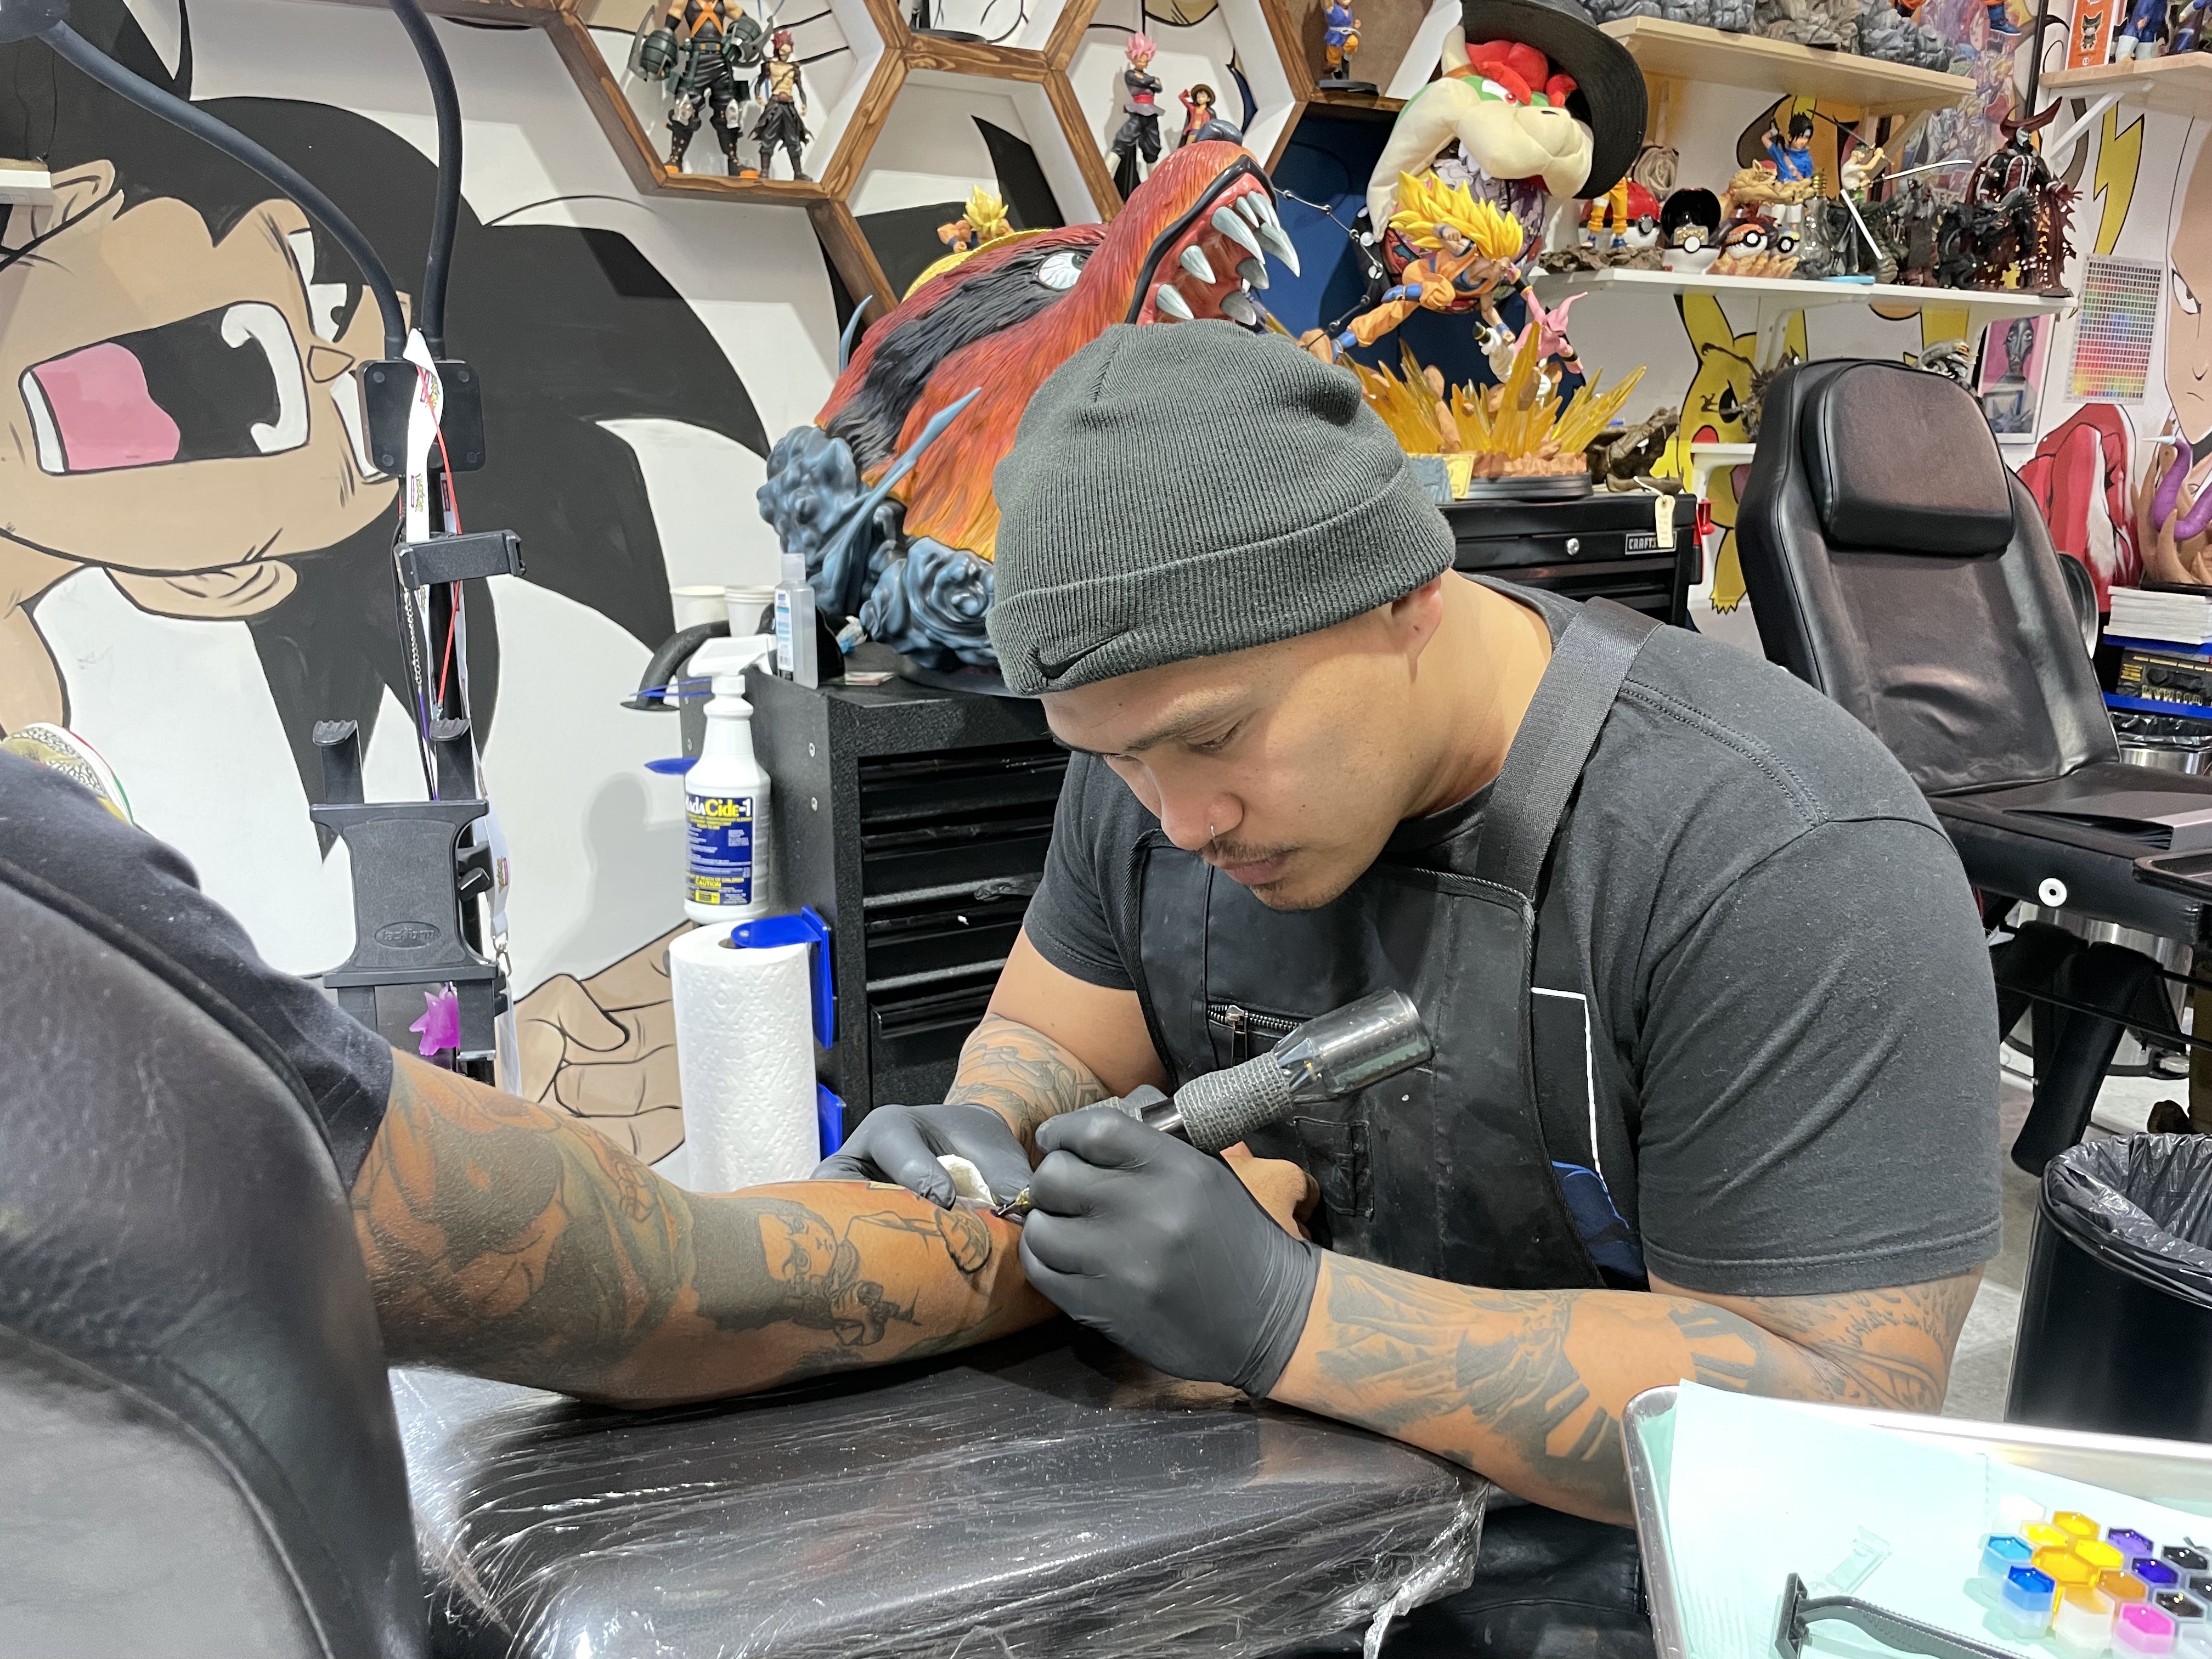 30 Best Black  White One Piece Tattoo Design Ideas  Saved Tattoo